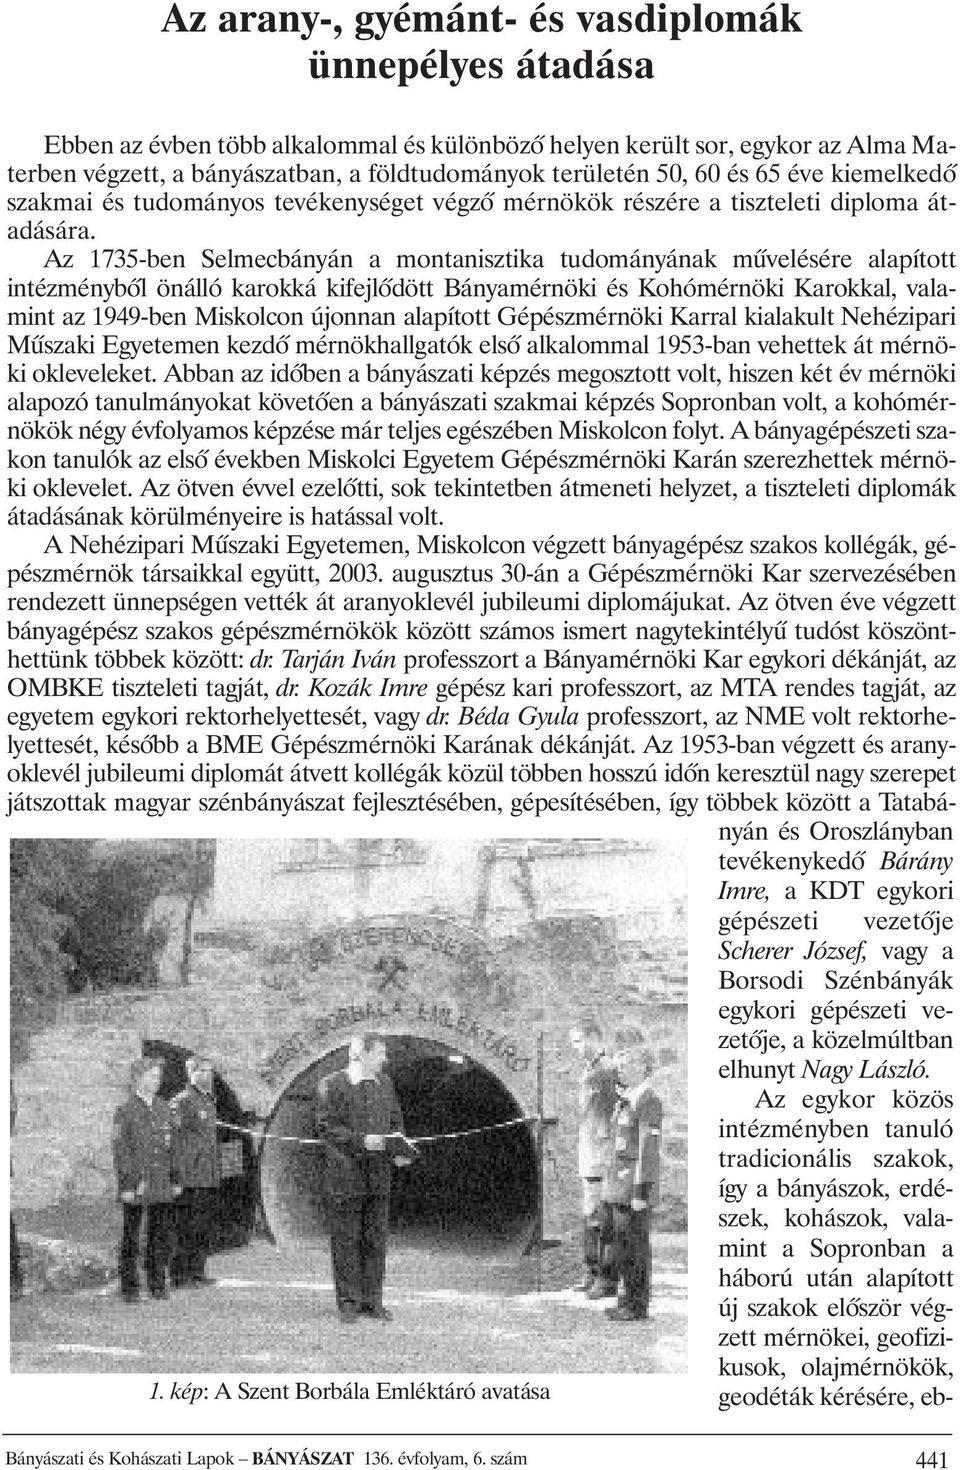 Az 1735-ben Selmecbányán a montanisztika tudományának mûvelésére alapított intézménybôl önálló karokká kifejlôdött Bányamérnöki és Kohómérnöki Karokkal, valamint az 1949-ben Miskolcon újonnan